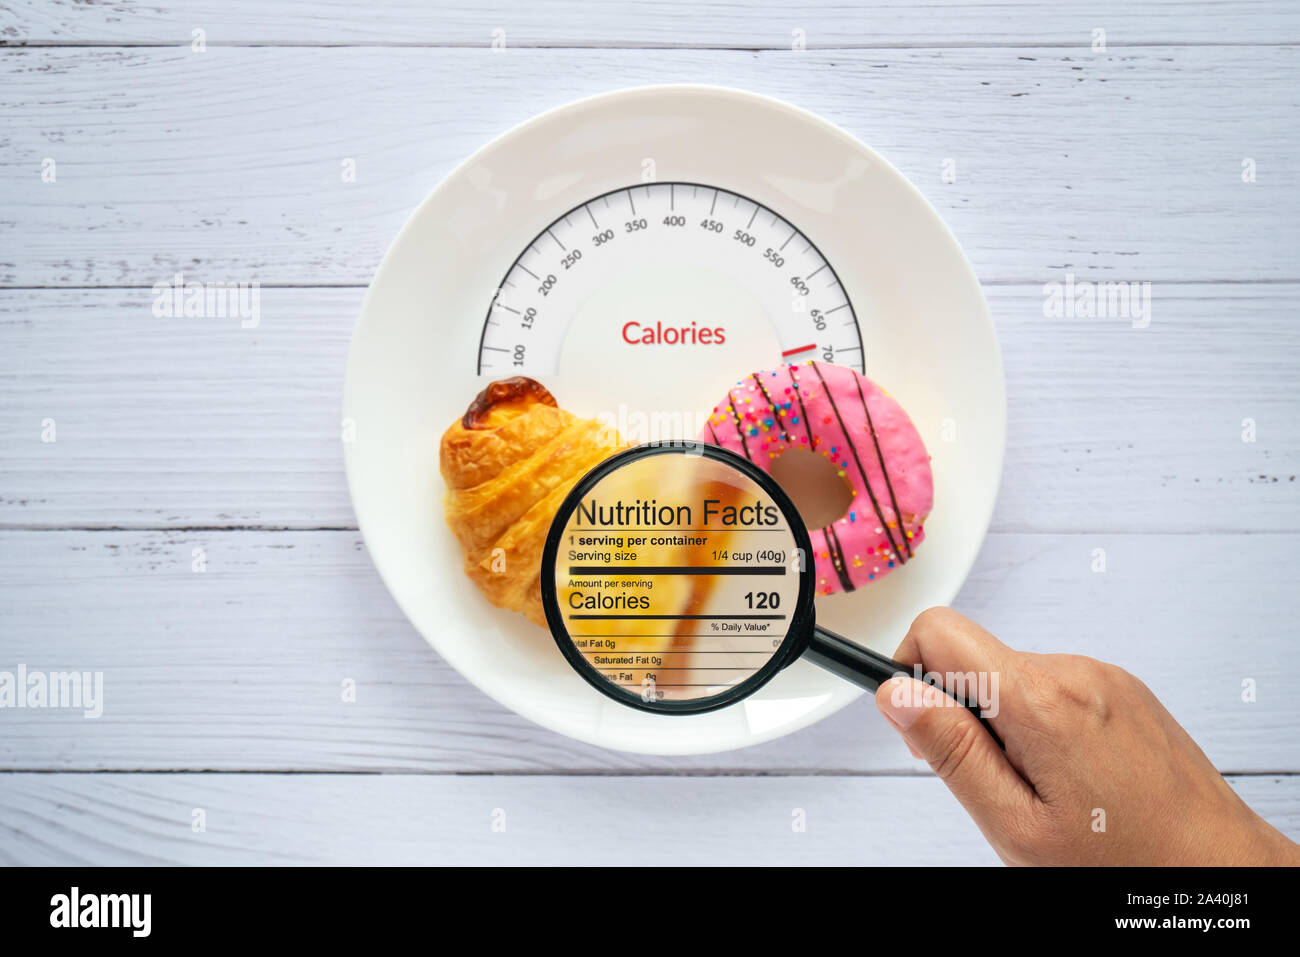 Il conteggio delle calorie, controllo degli alimenti e nutrizione dei consumatori fatti concetto etichetta. donut e croissant sulla piastra bianca con linguetta scale per calorie meas Foto Stock